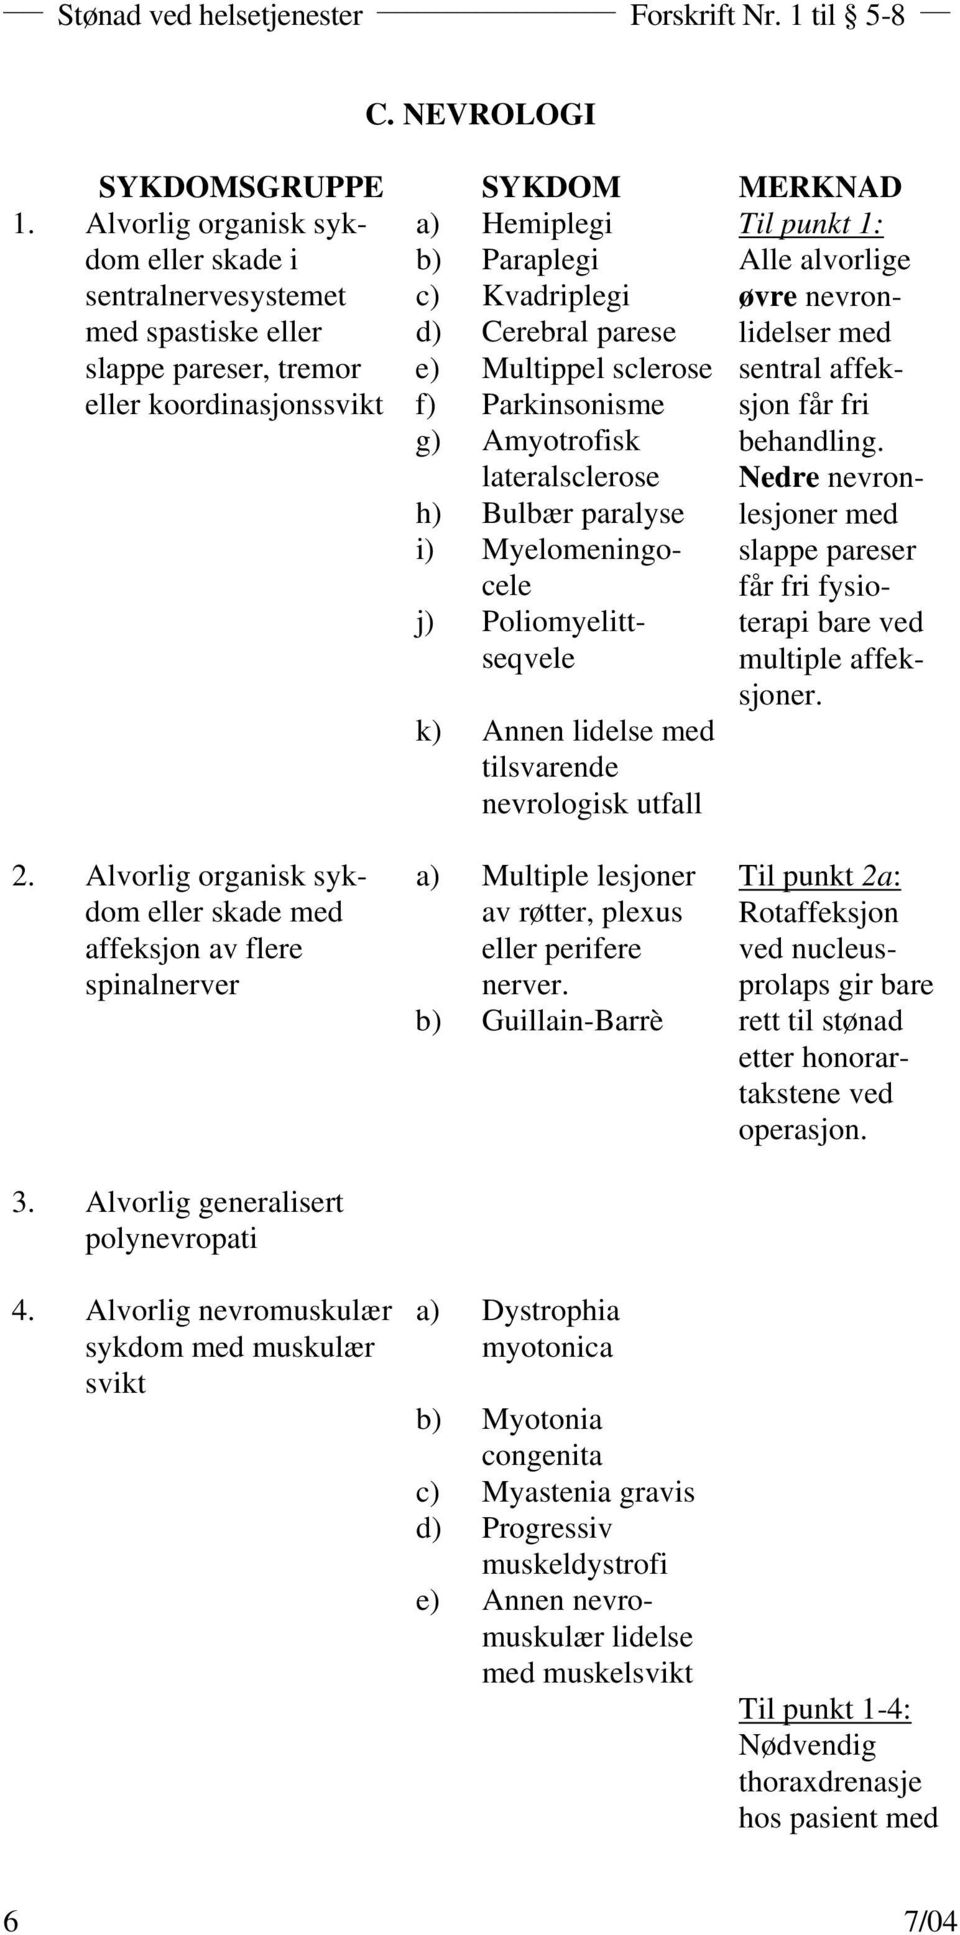 koordinasjonssvikt f) Parkinsonisme g) Amyotrofisk lateralsclerose h) Bulbær paralyse i) Myelomeningocele j) Poliomyelittseqvele k) Annen lidelse med tilsvarende nevrologisk utfall Til punkt 1: Alle